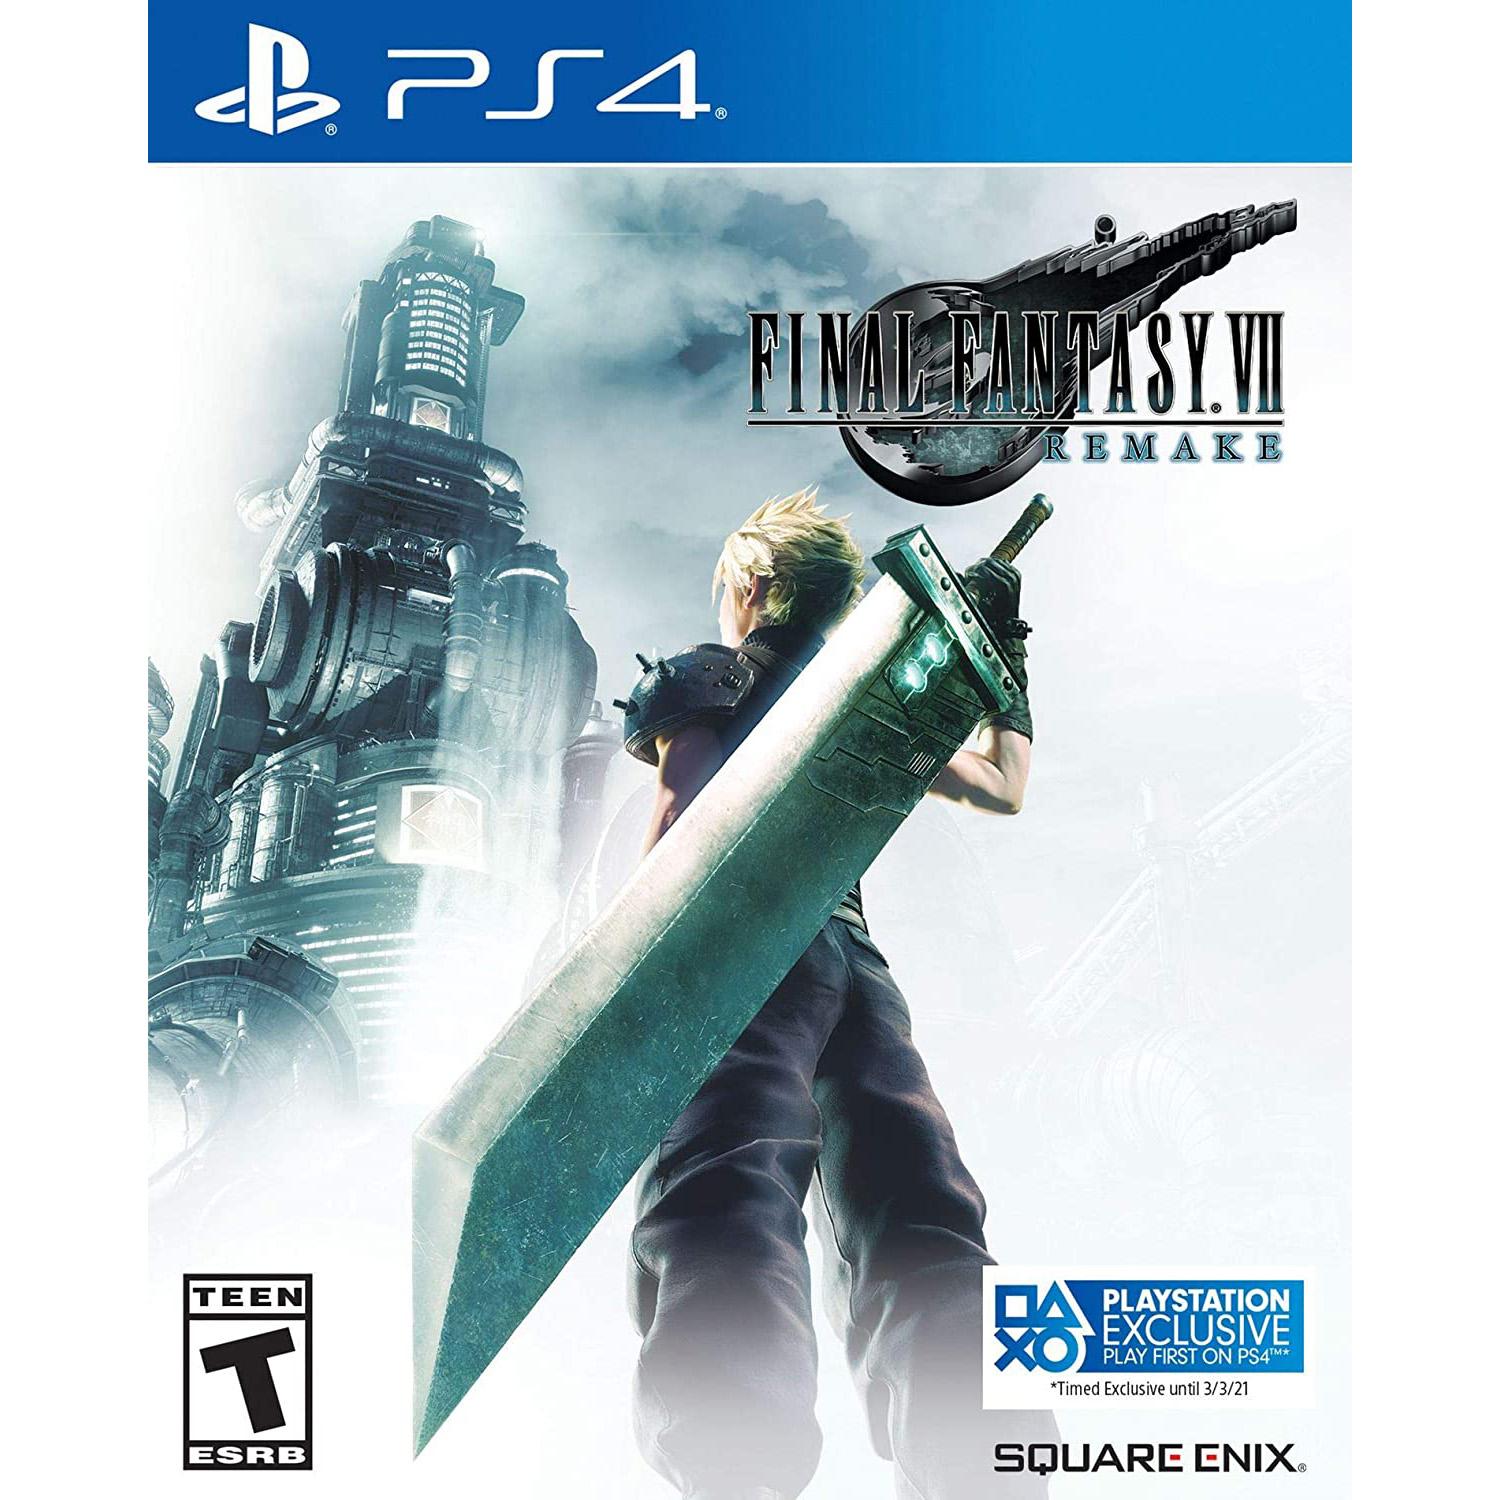 Final Fantasy VII Remake PS4 for $19.99